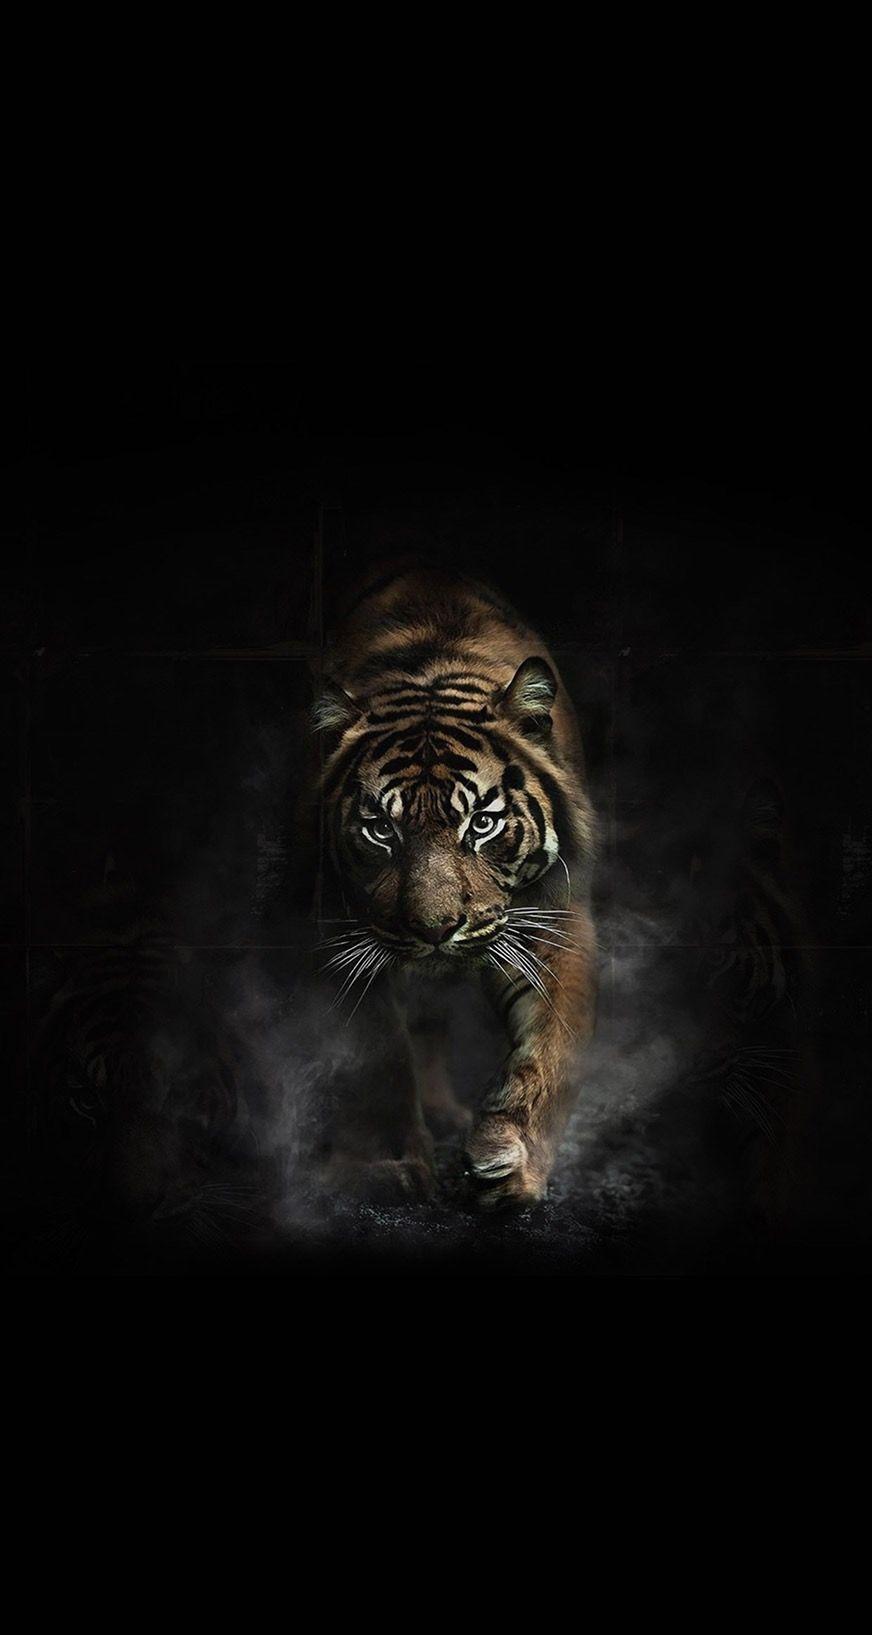 Black Tiger Wallpaper 2 by PunkerLazar on DeviantArt